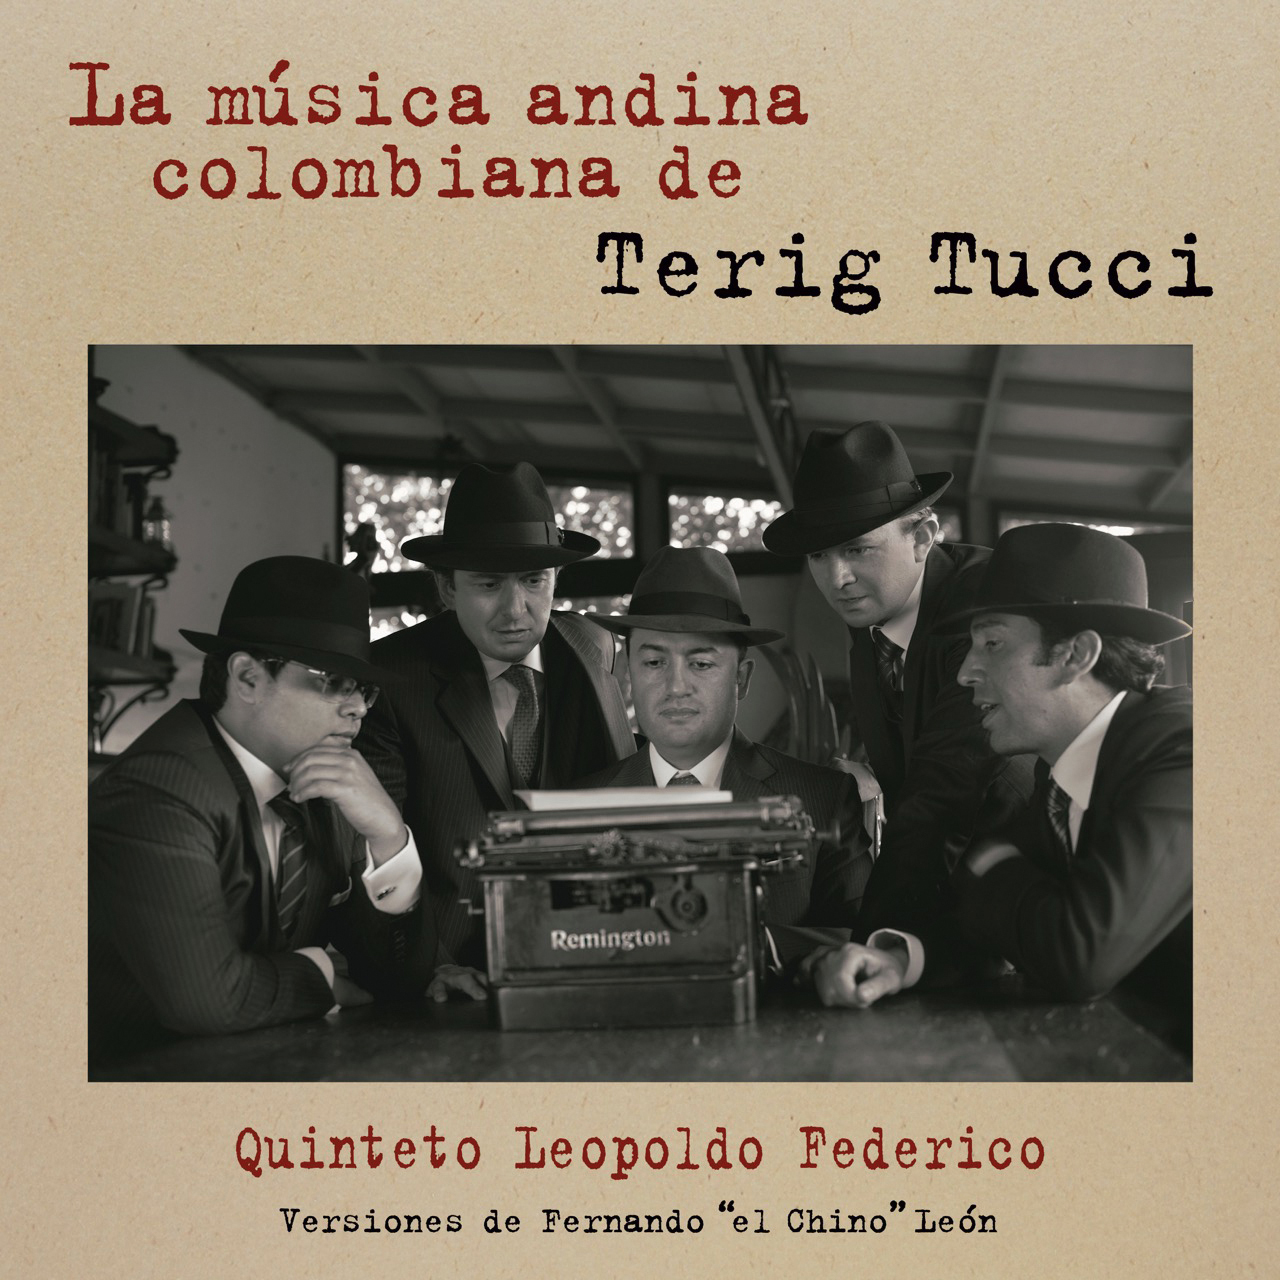 La música andina colombiana de terig tucci. Quinteto Leopoldo Federico. Edición propia, 2021